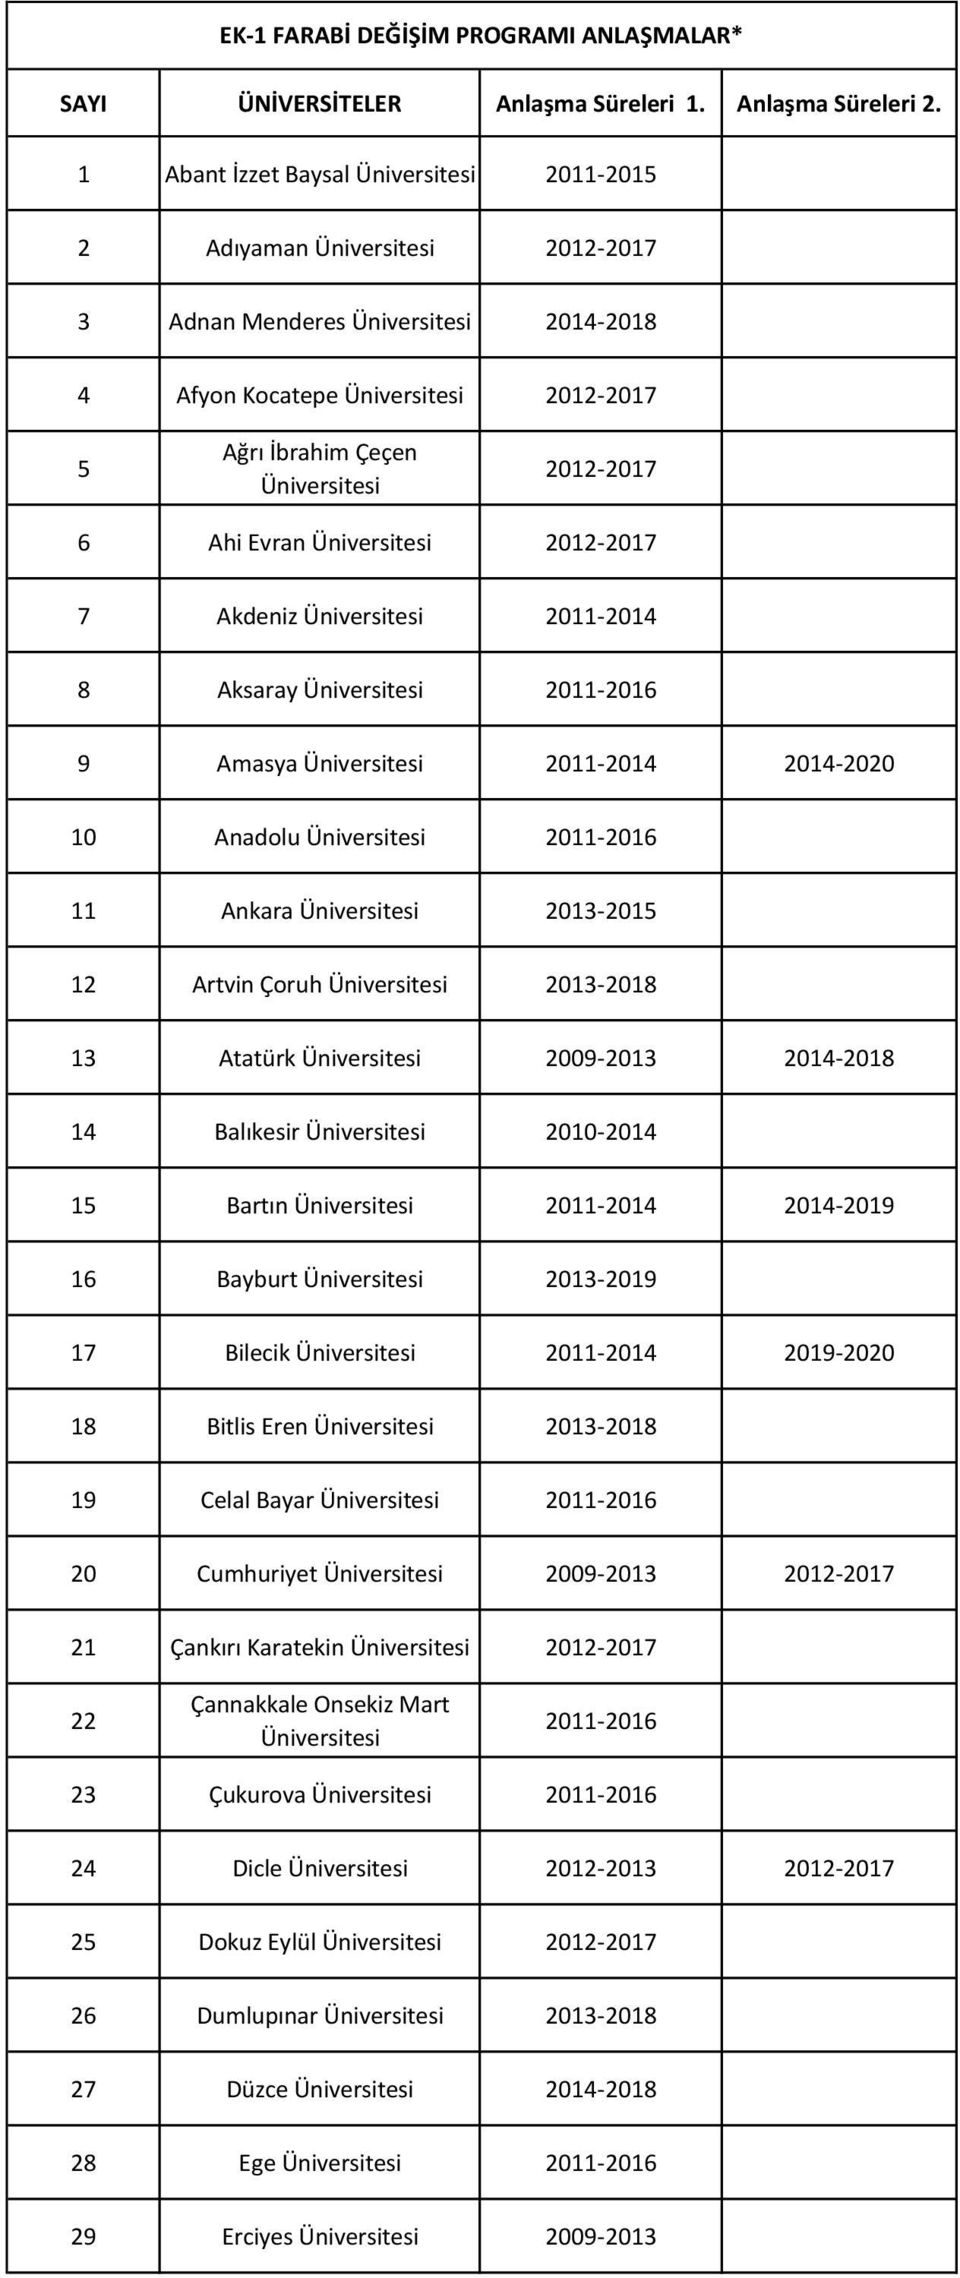 2012-2017 6 Ahi Evran Üniversitesi 2012-2017 7 Akdeniz Üniversitesi 2011-2014 8 Aksaray Üniversitesi 2011-2016 9 Amasya Üniversitesi 2011-2014 2014-2020 10 Anadolu Üniversitesi 2011-2016 11 Ankara